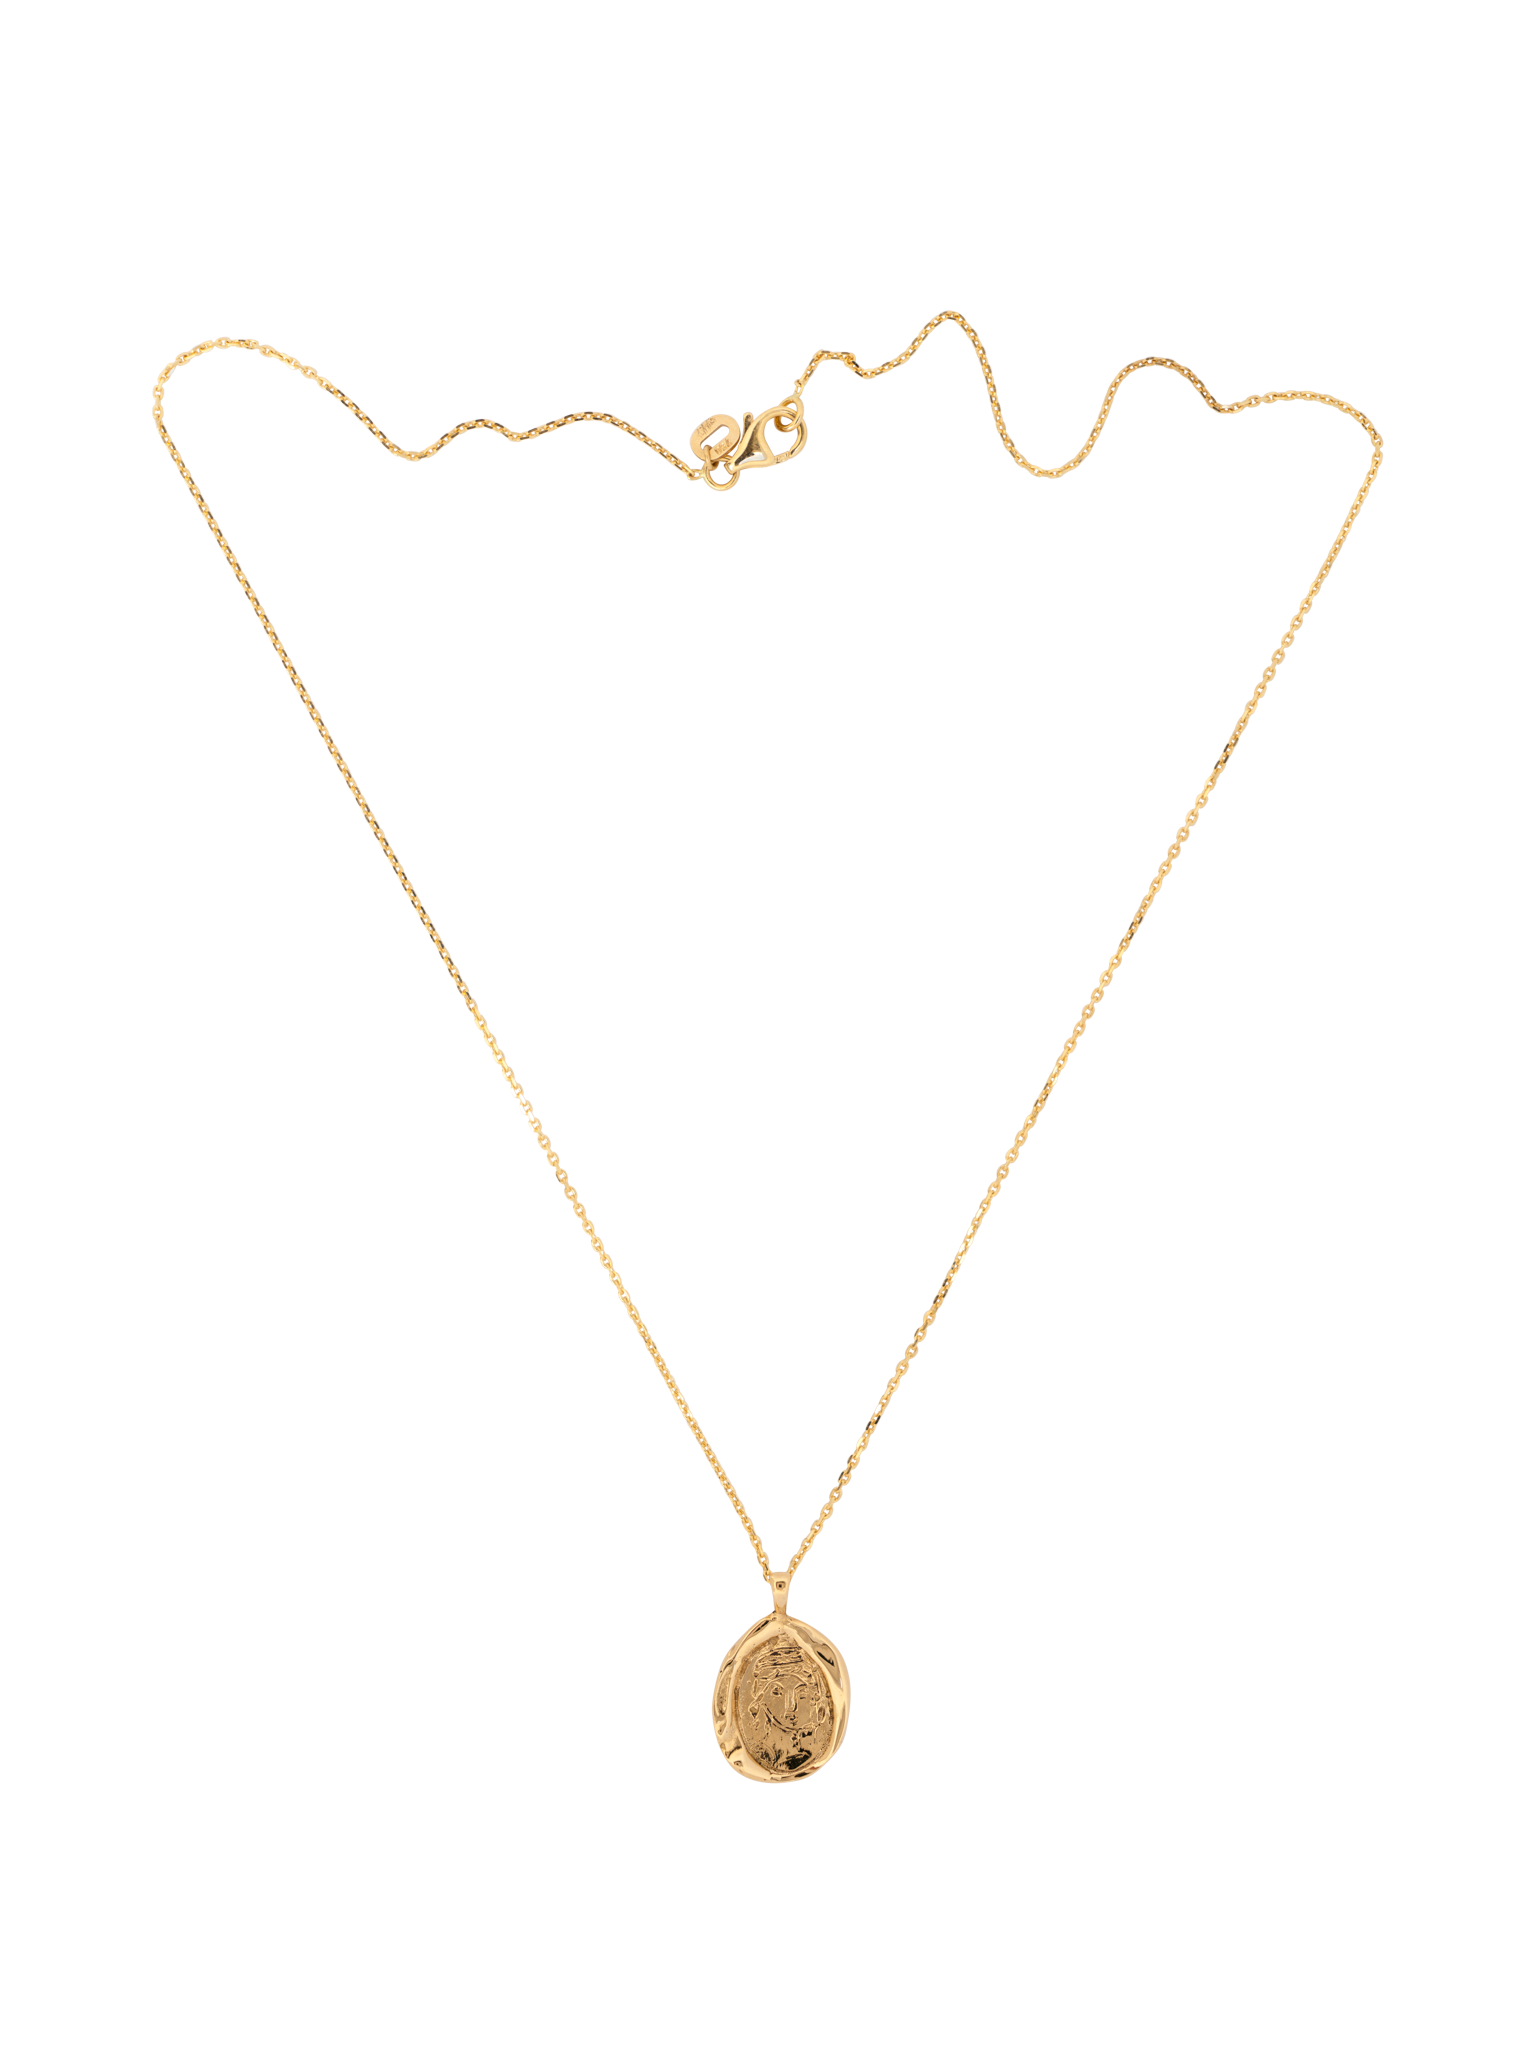 Athena goddess necklace